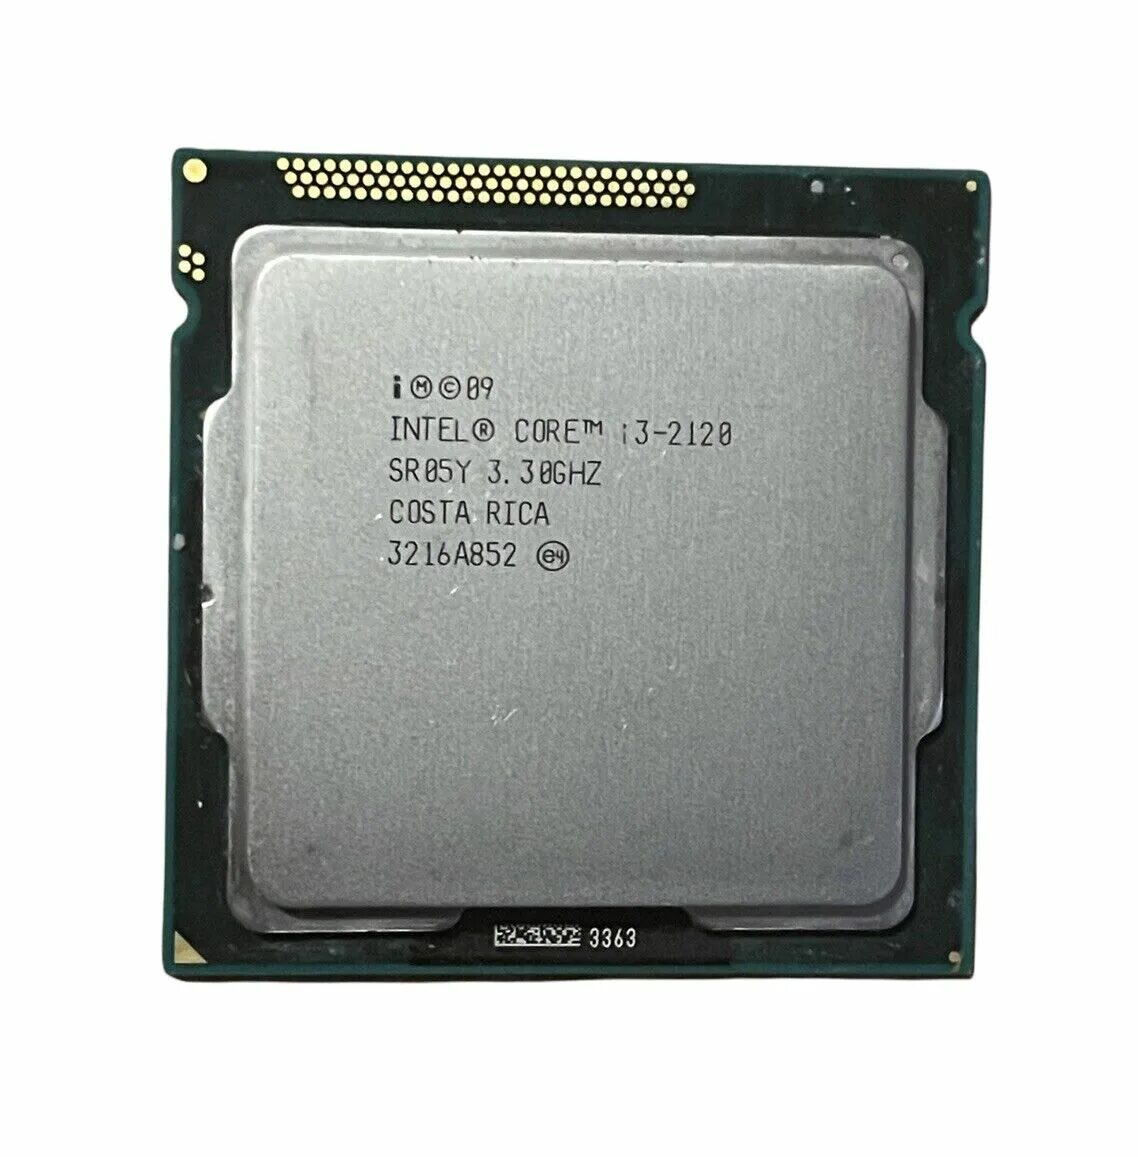 2120 сокет. Intel i3 2120. Intel Core i3 2120. Intel Core TM i3 2120 CPU 3.30GHZ. Intel(r) Core(TM) i3-2120 CPU @ 3.30GHZ 3.30 GHZ.